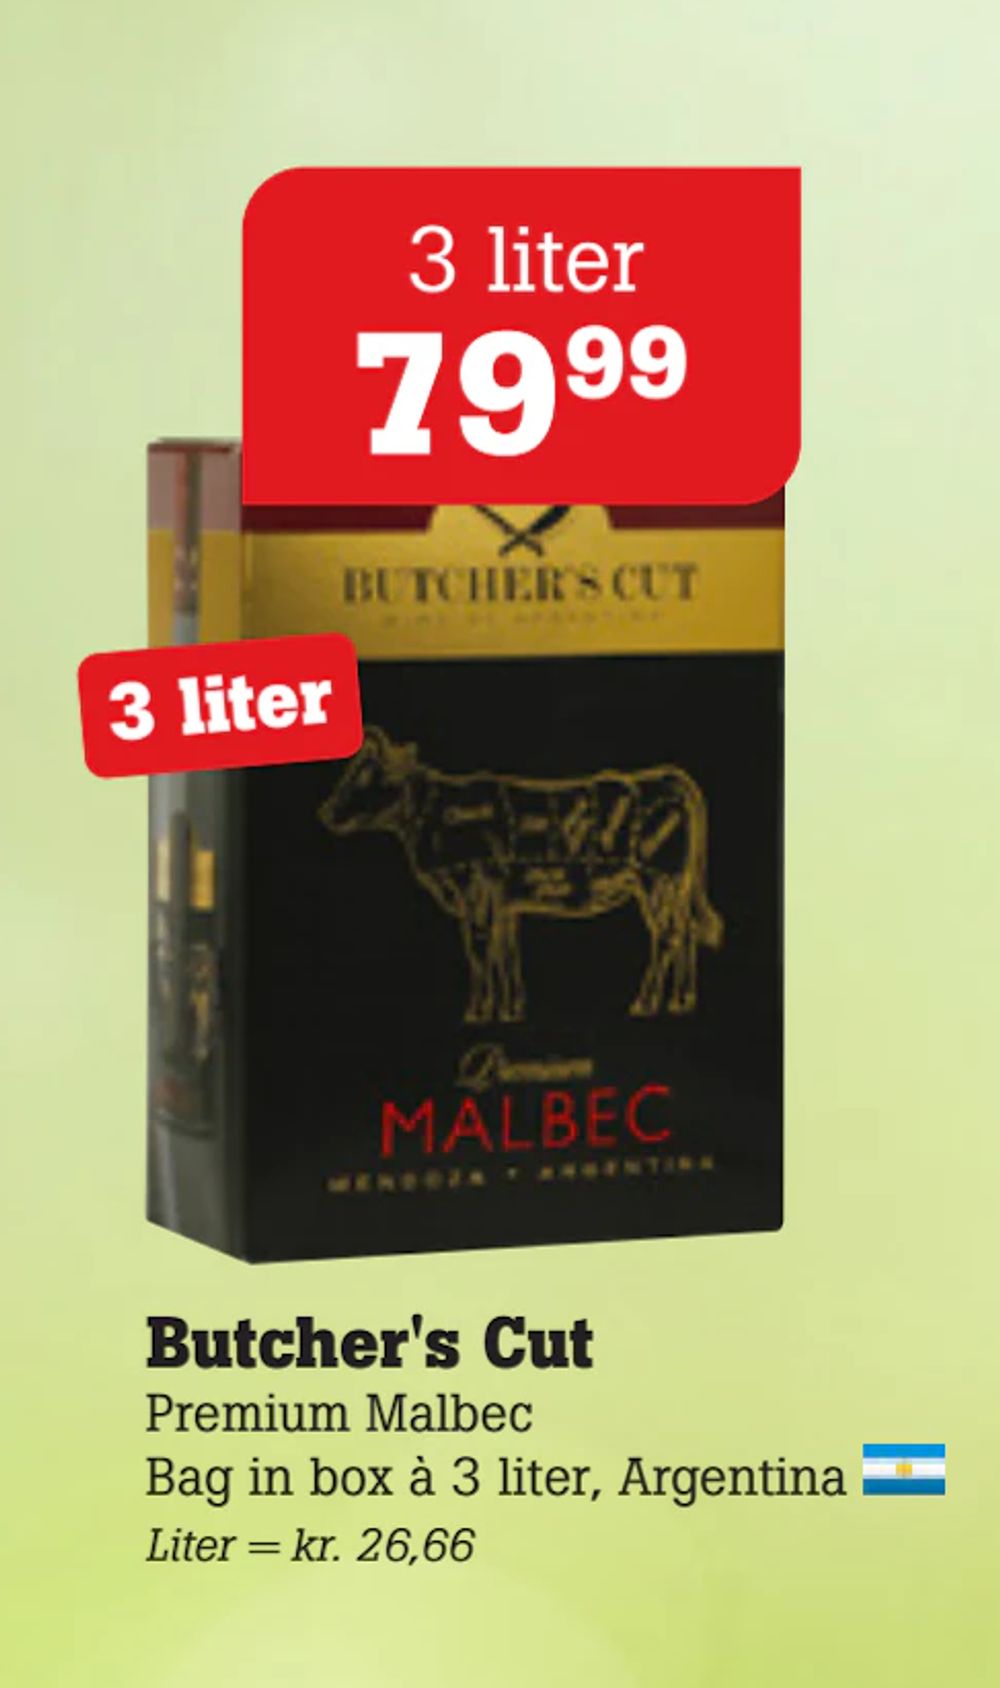 Tilbud på Butcher's Cut fra Poetzsch Padborg til 79,99 kr.